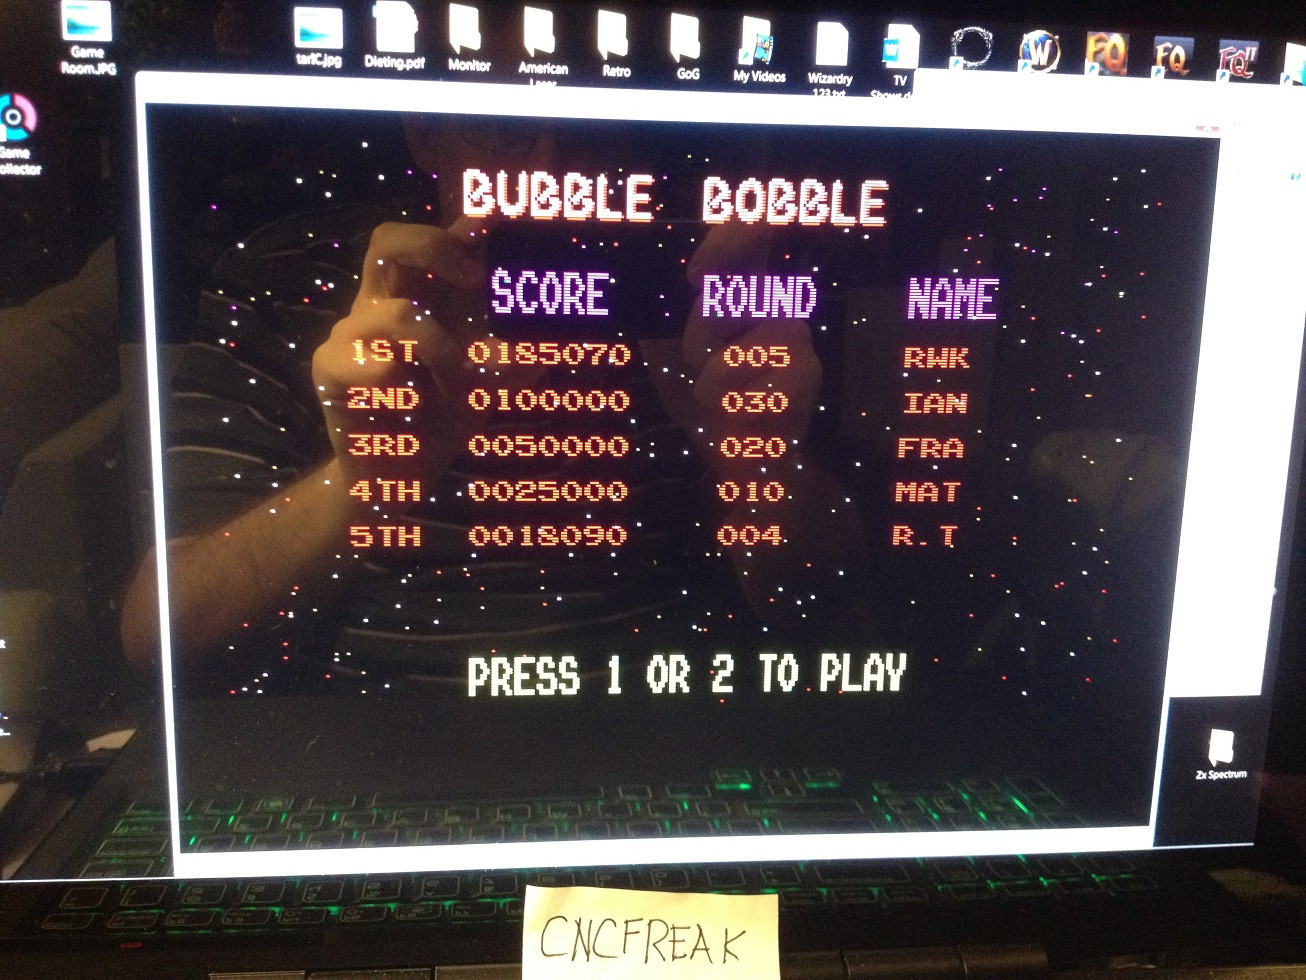 Bubble Bobble 185,070 points